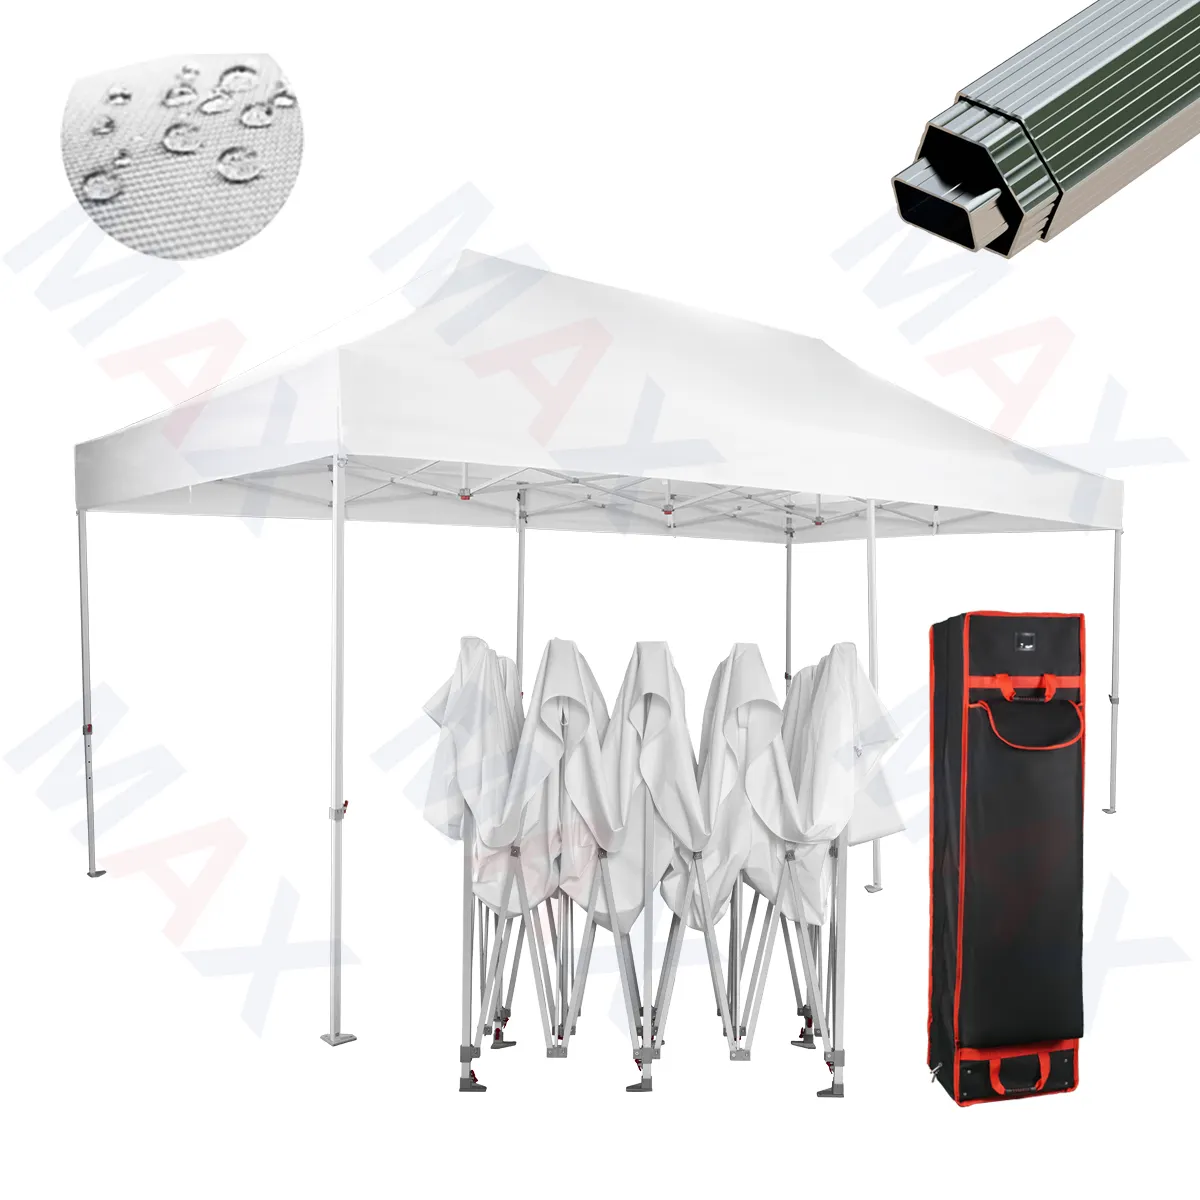 Tente popup en aluminium méga hexagonale résistante de 48mm tente d'auvent 10x10 & 10x20 tente pliante extérieure d'exposition commerciale